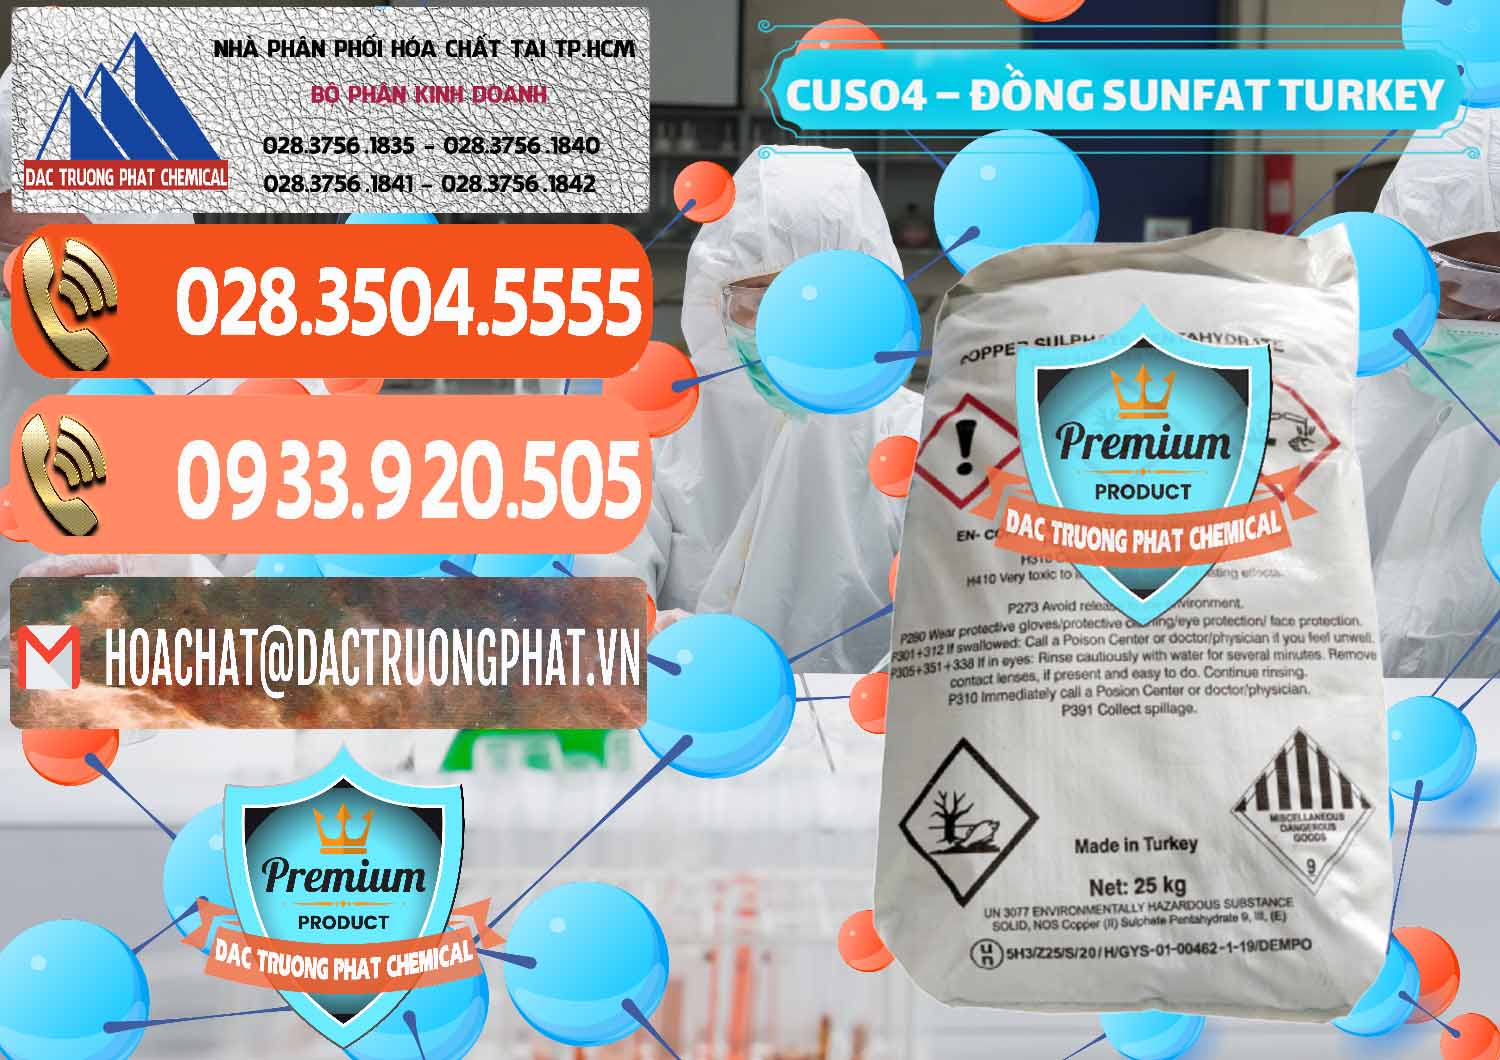 Nơi cung cấp và bán CuSO4 – Đồng Sunfat Thổ Nhĩ Kỳ Turkey - 0481 - Công ty phân phối & cung cấp hóa chất tại TP.HCM - hoachatmientay.com